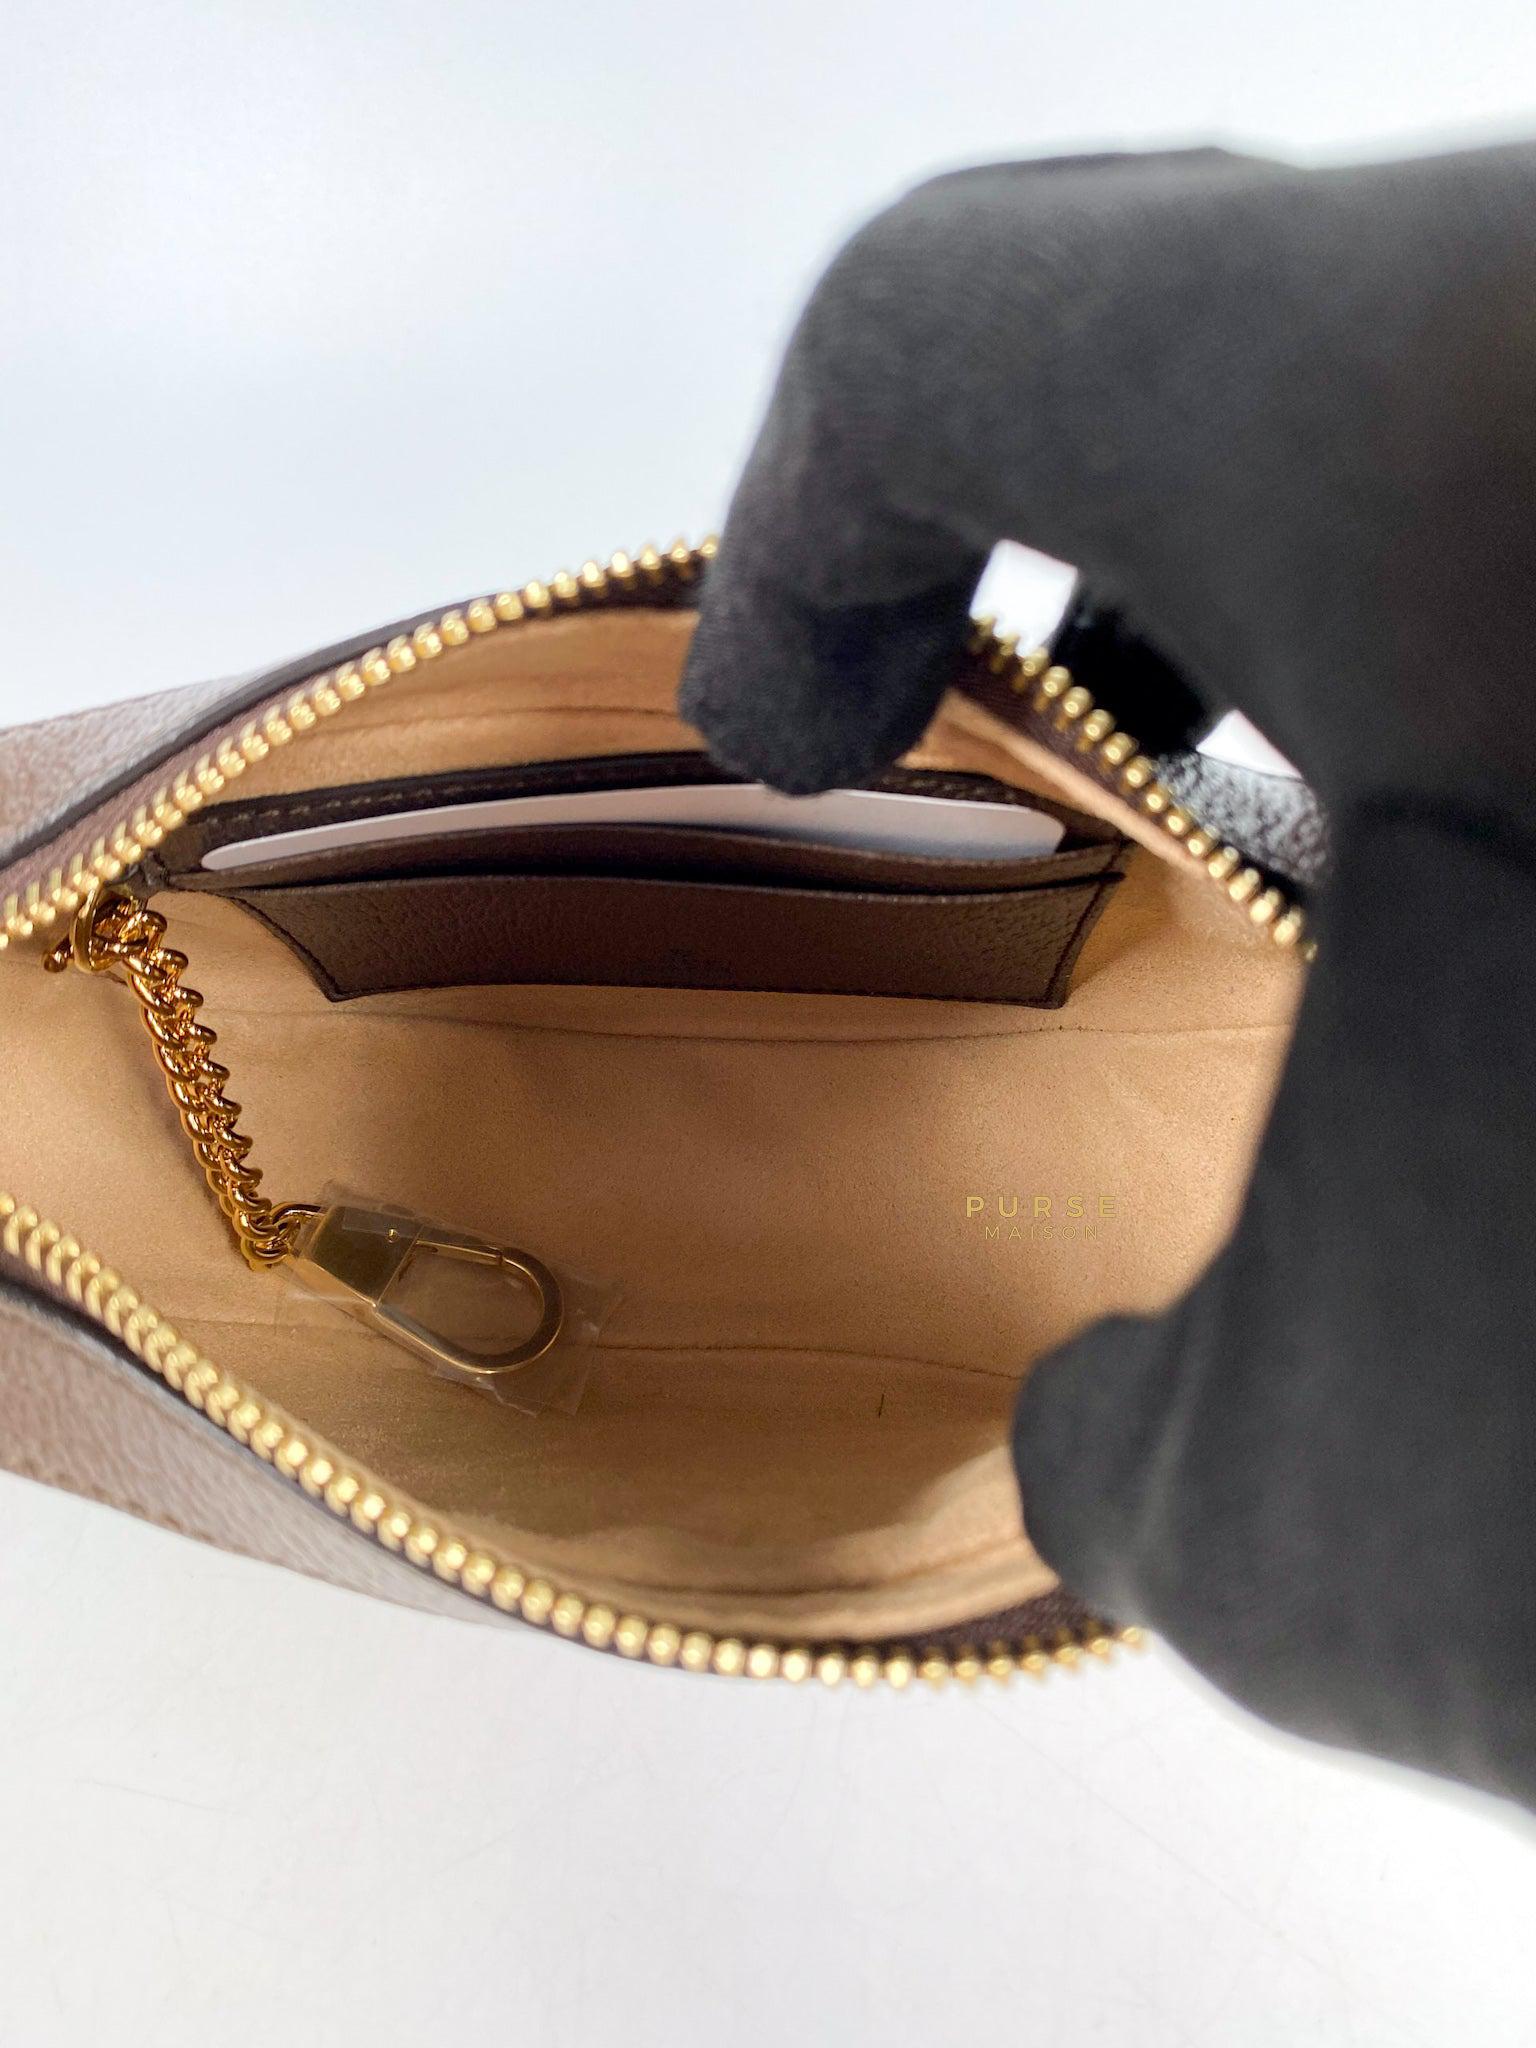 Gucci Ophidia Jumbo GG Mini Bag in Brown